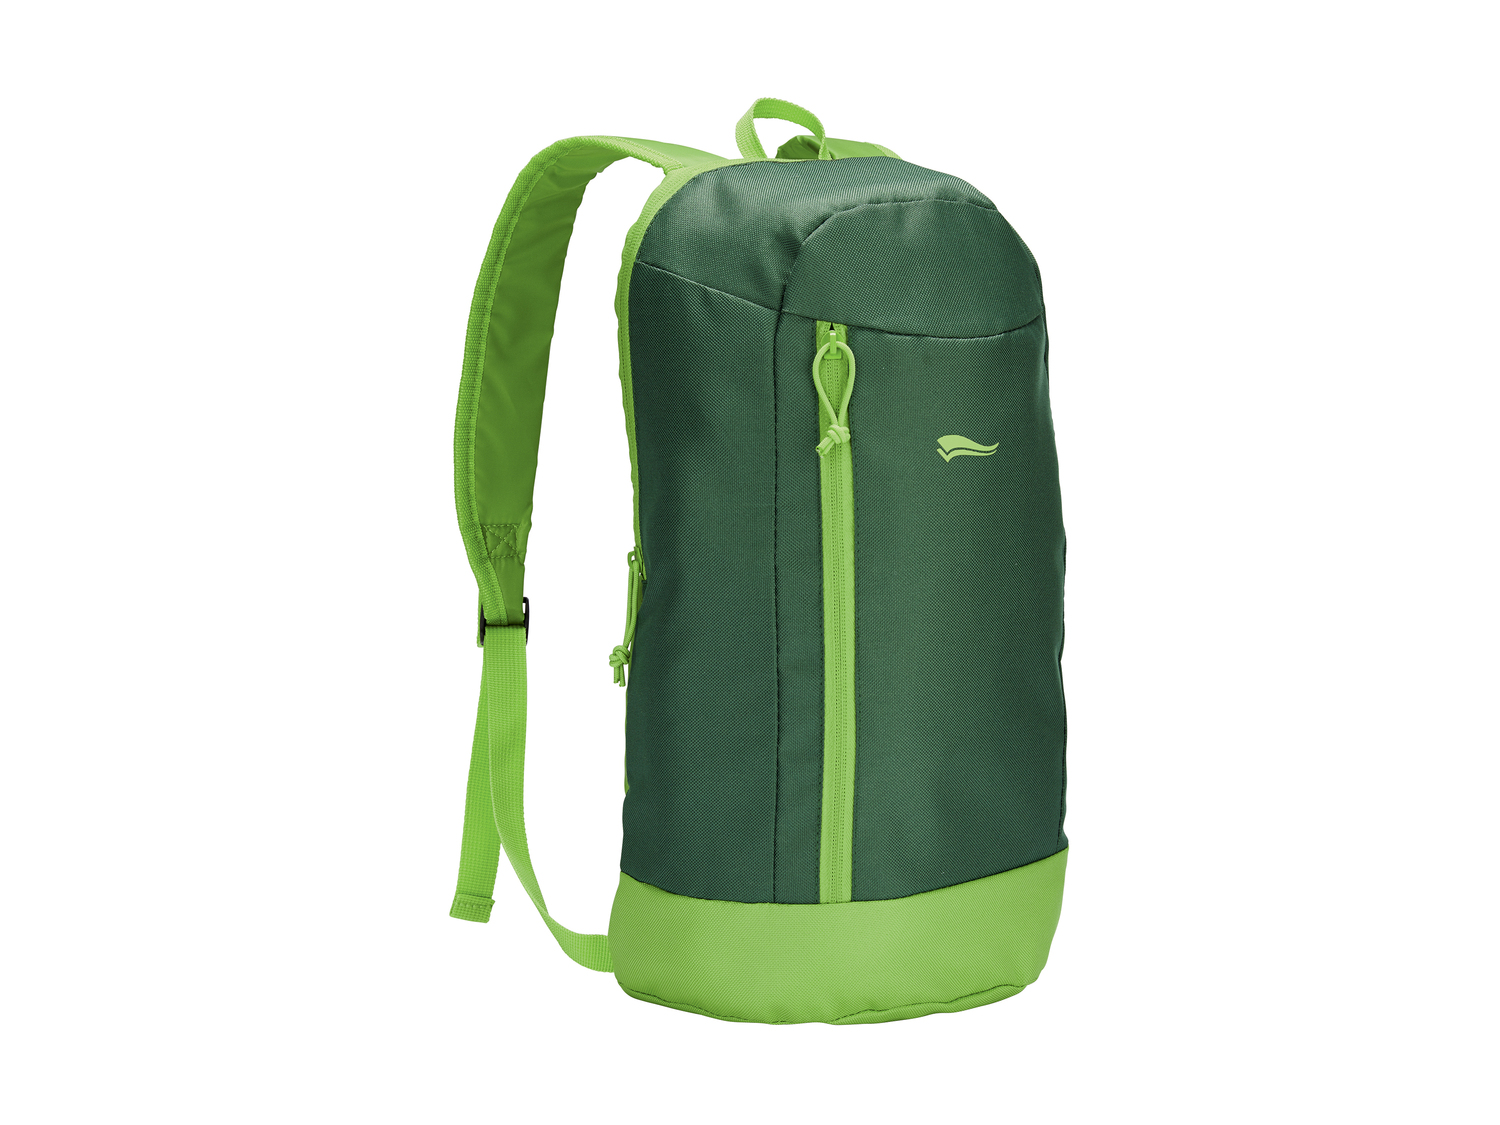 Mini-sac à dos , le prix 1.99 € 
- Env. 10 L
- 4 kg max.
- 5 coloris au choix
Caractéristiques

- ...